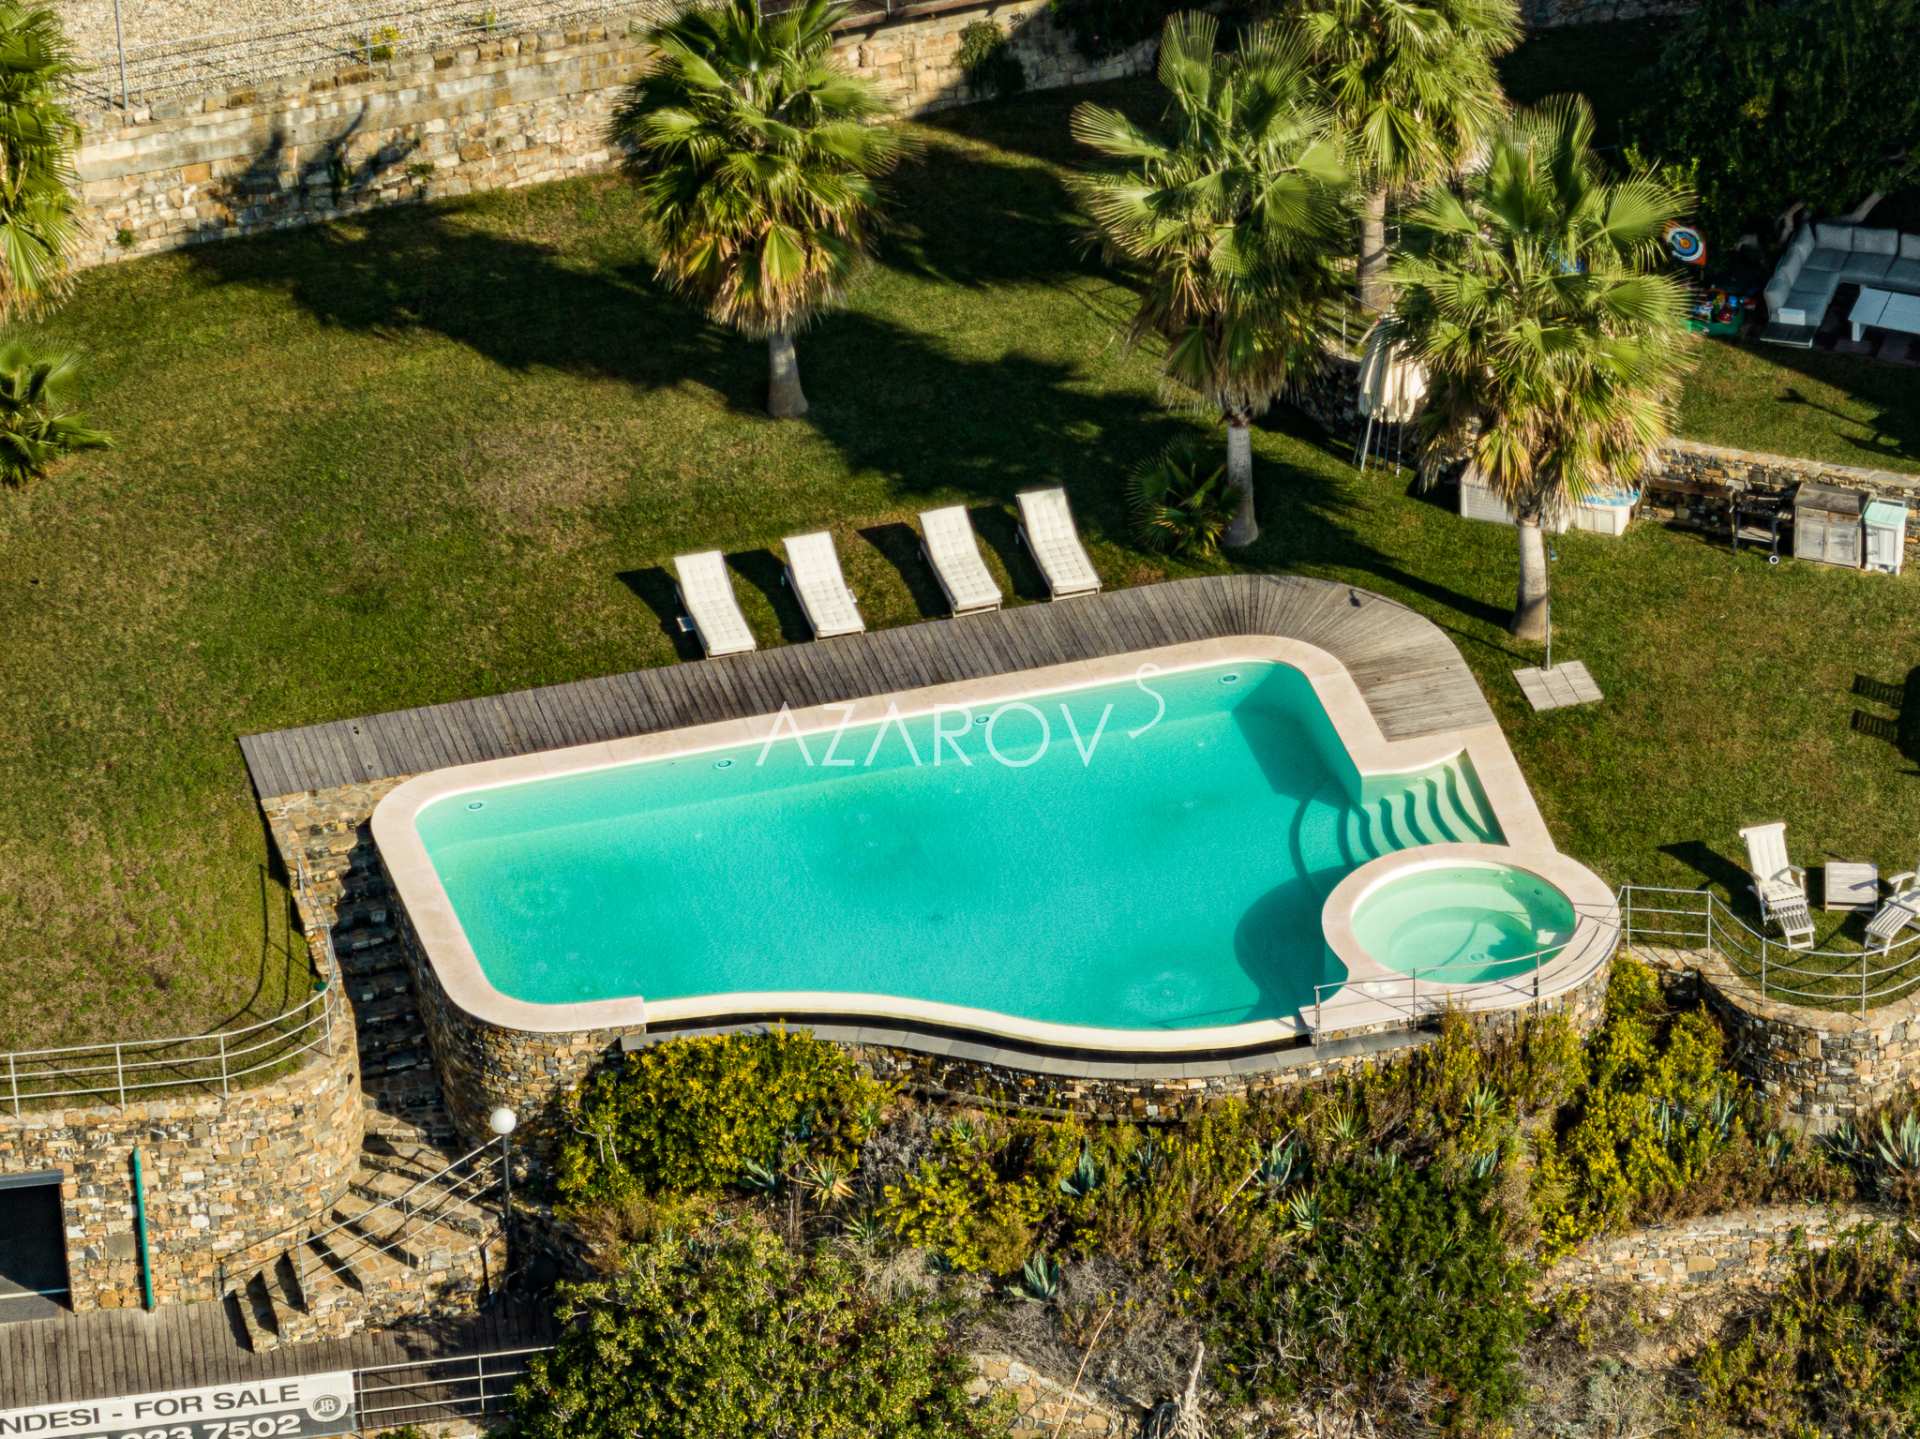 Villa med privat strand Ligurien